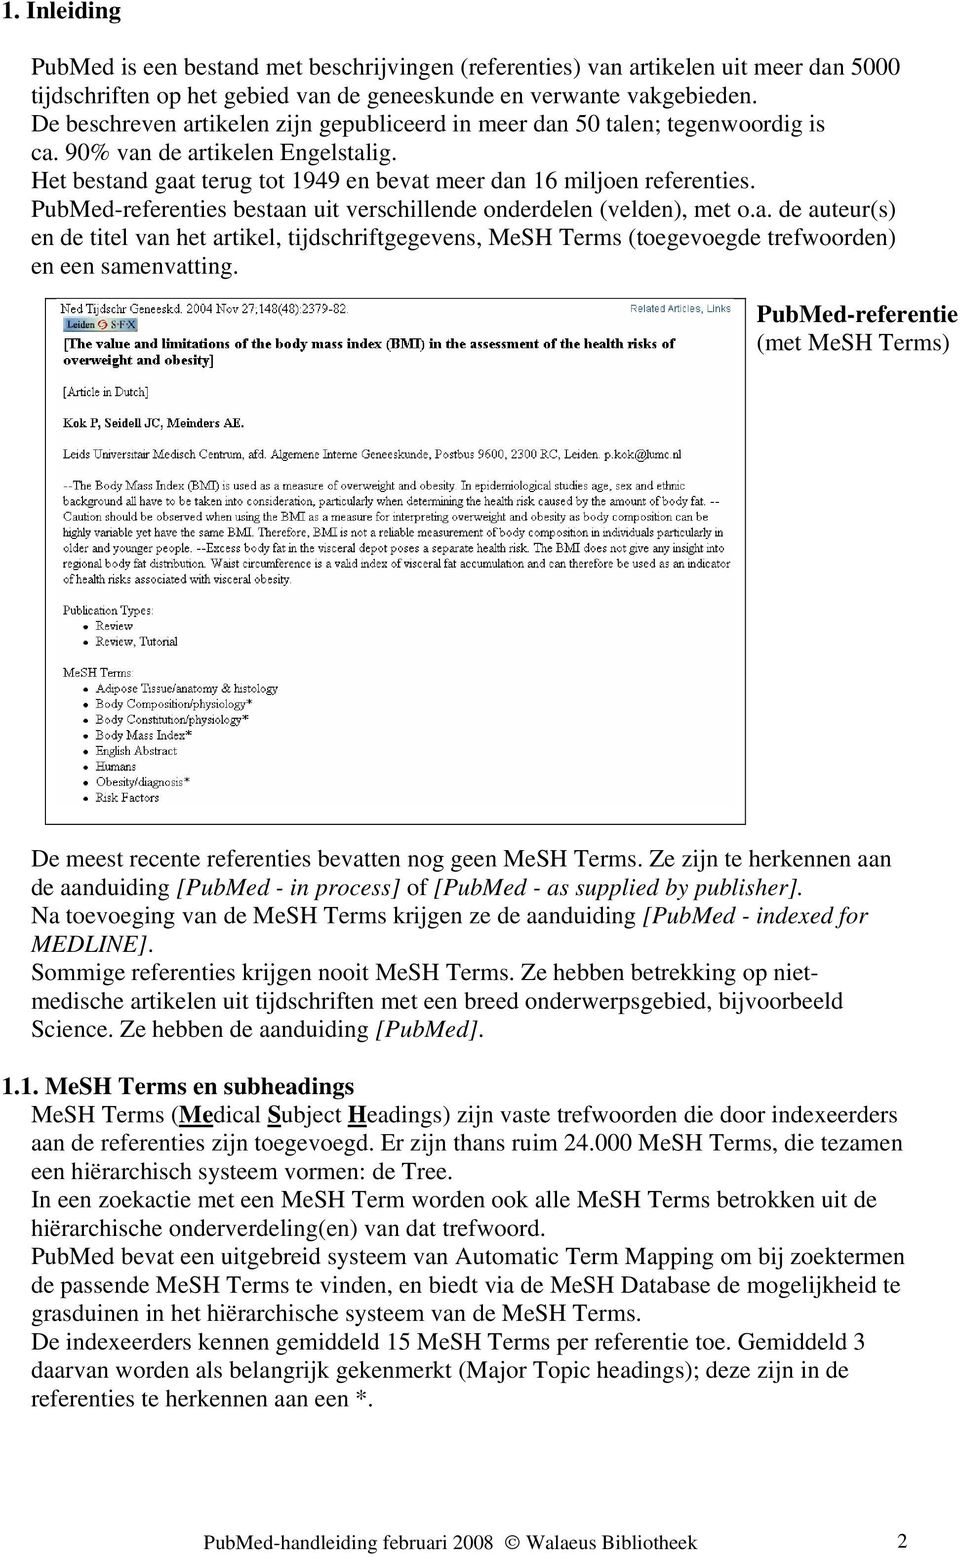 PubMed-referenties bestaan uit verschillende onderdelen (velden), met o.a. de auteur(s) en de titel van het artikel, tijdschriftgegevens, MeSH Terms (toegevoegde trefwoorden) en een samenvatting.